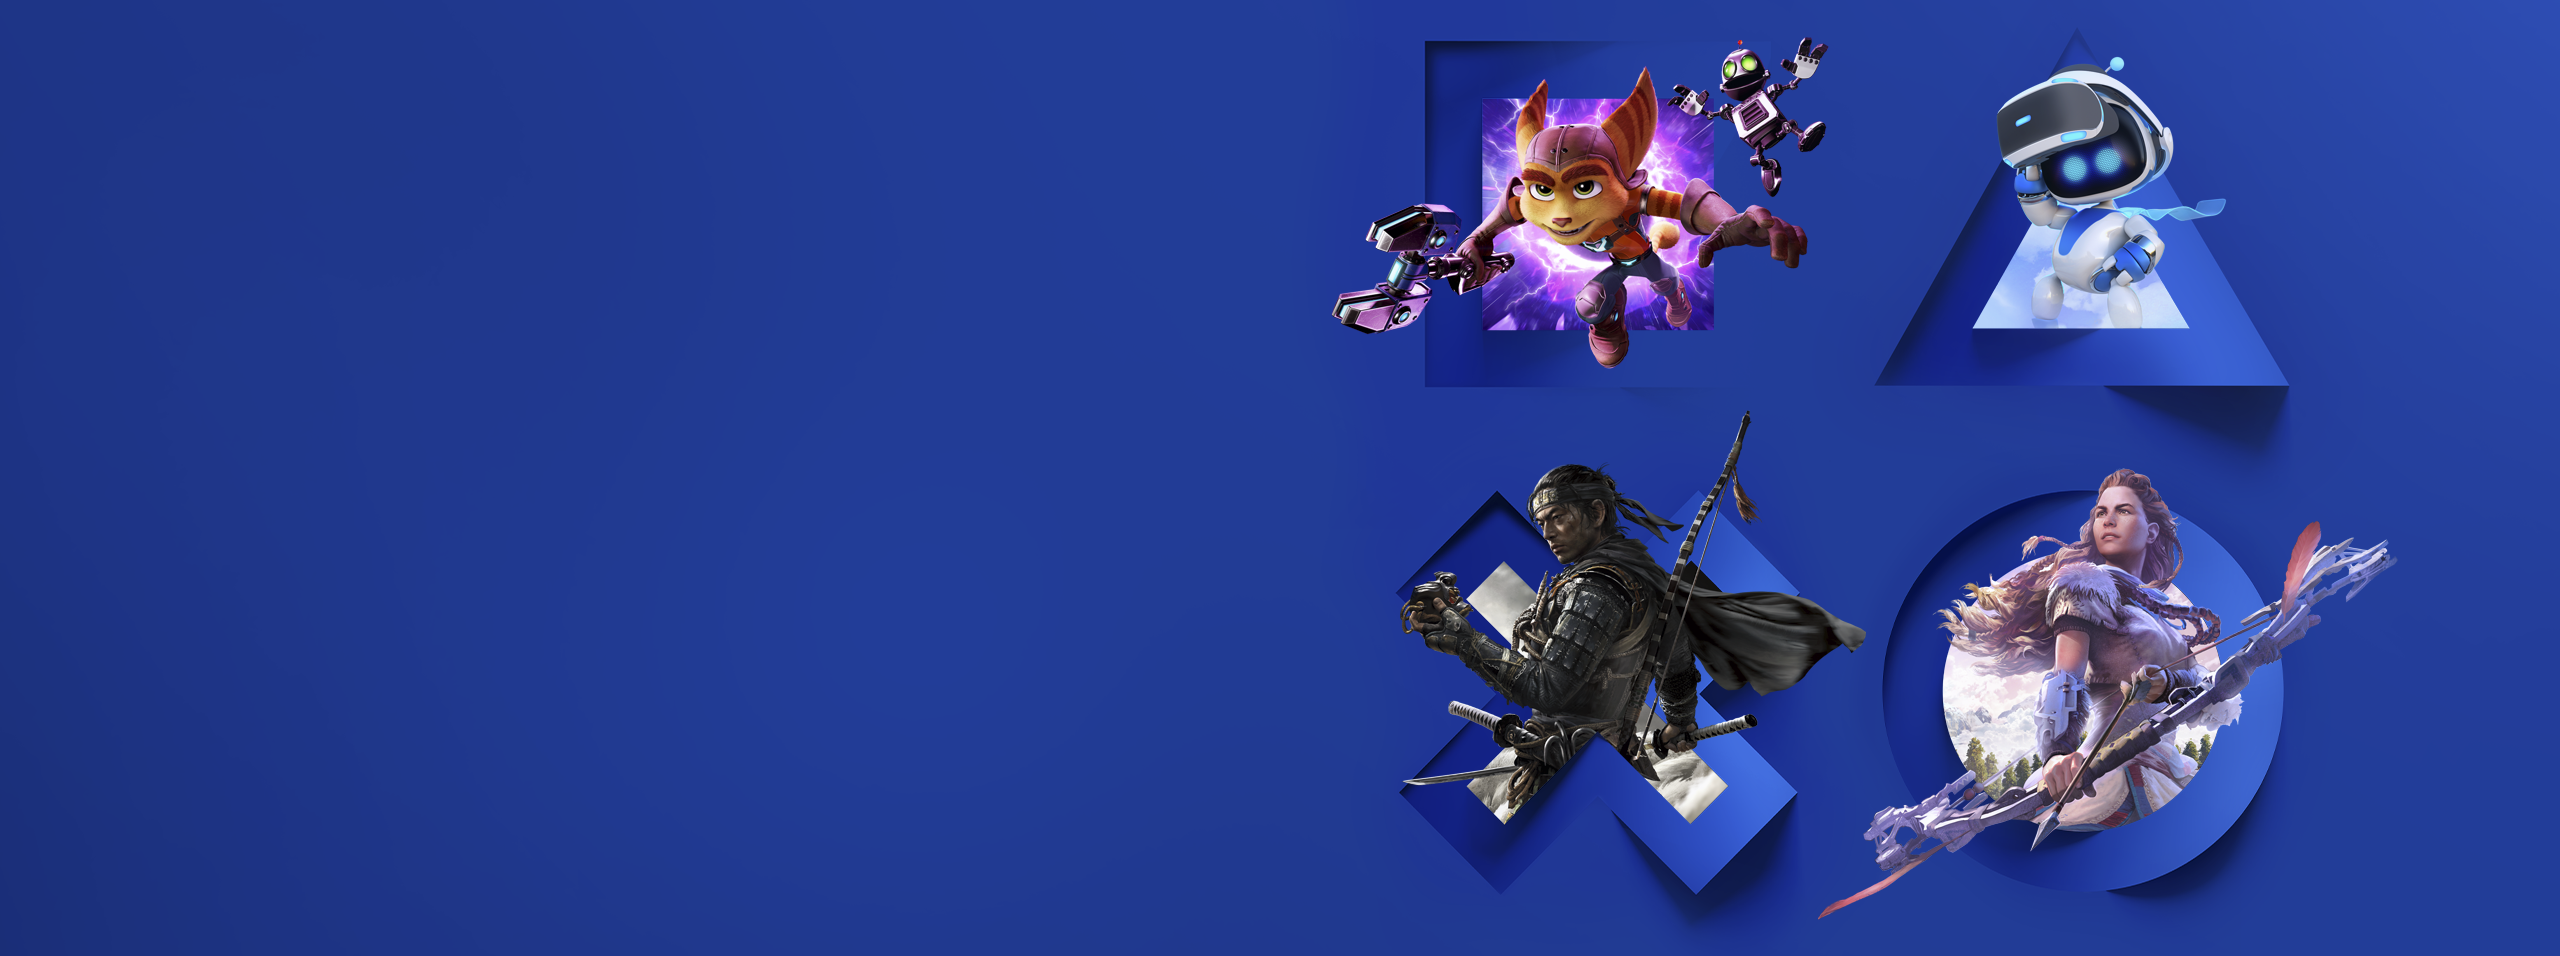 Shrnutí dění na PlayStation – banner hero